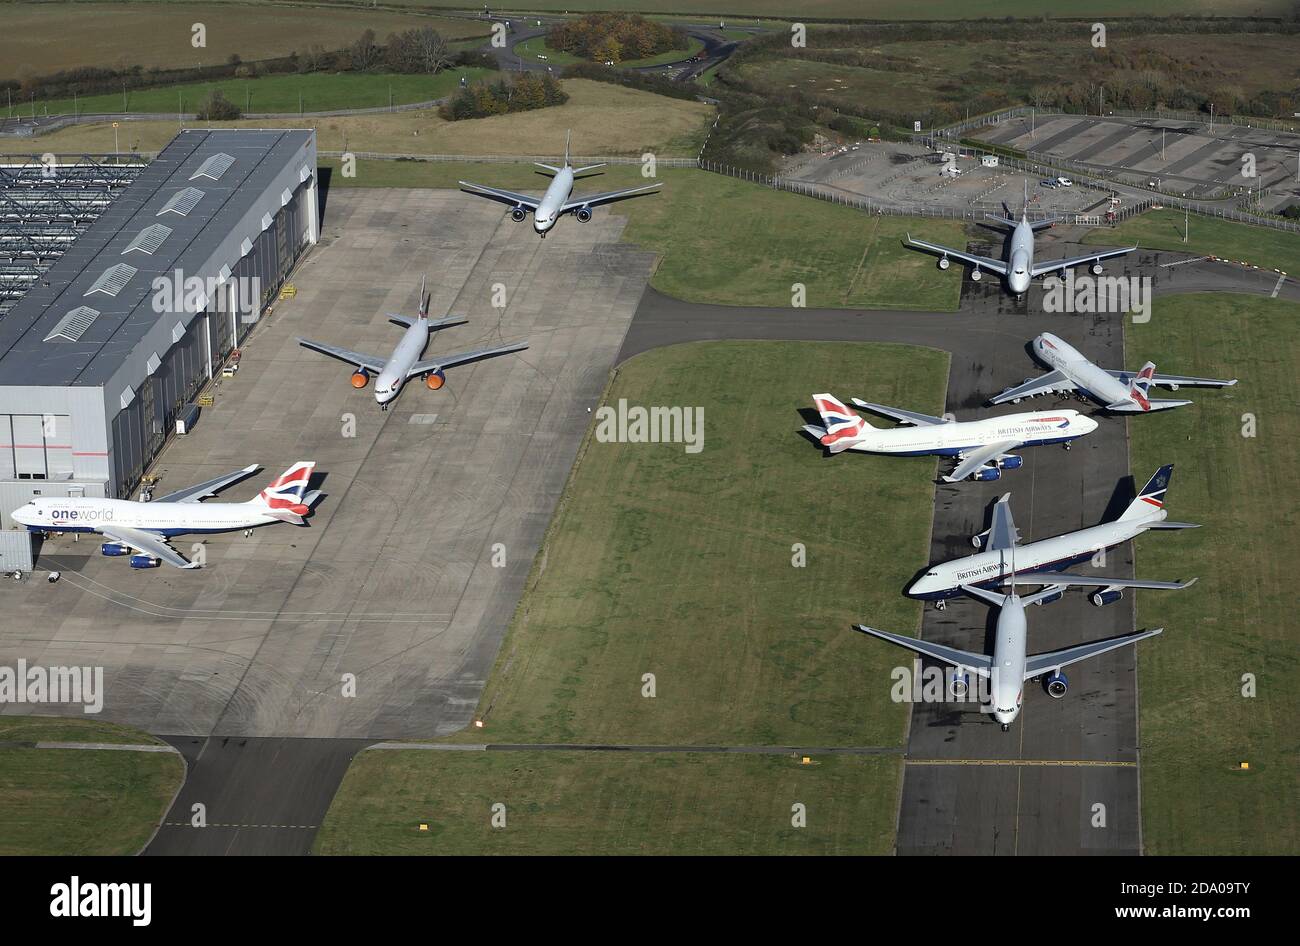 Vista aerea dei British Airways Boeing 747-400 Jumbo Jets all'aeroporto di Cardiff prima di effettuare il loro volo finale per essere staccati. Foto Stock